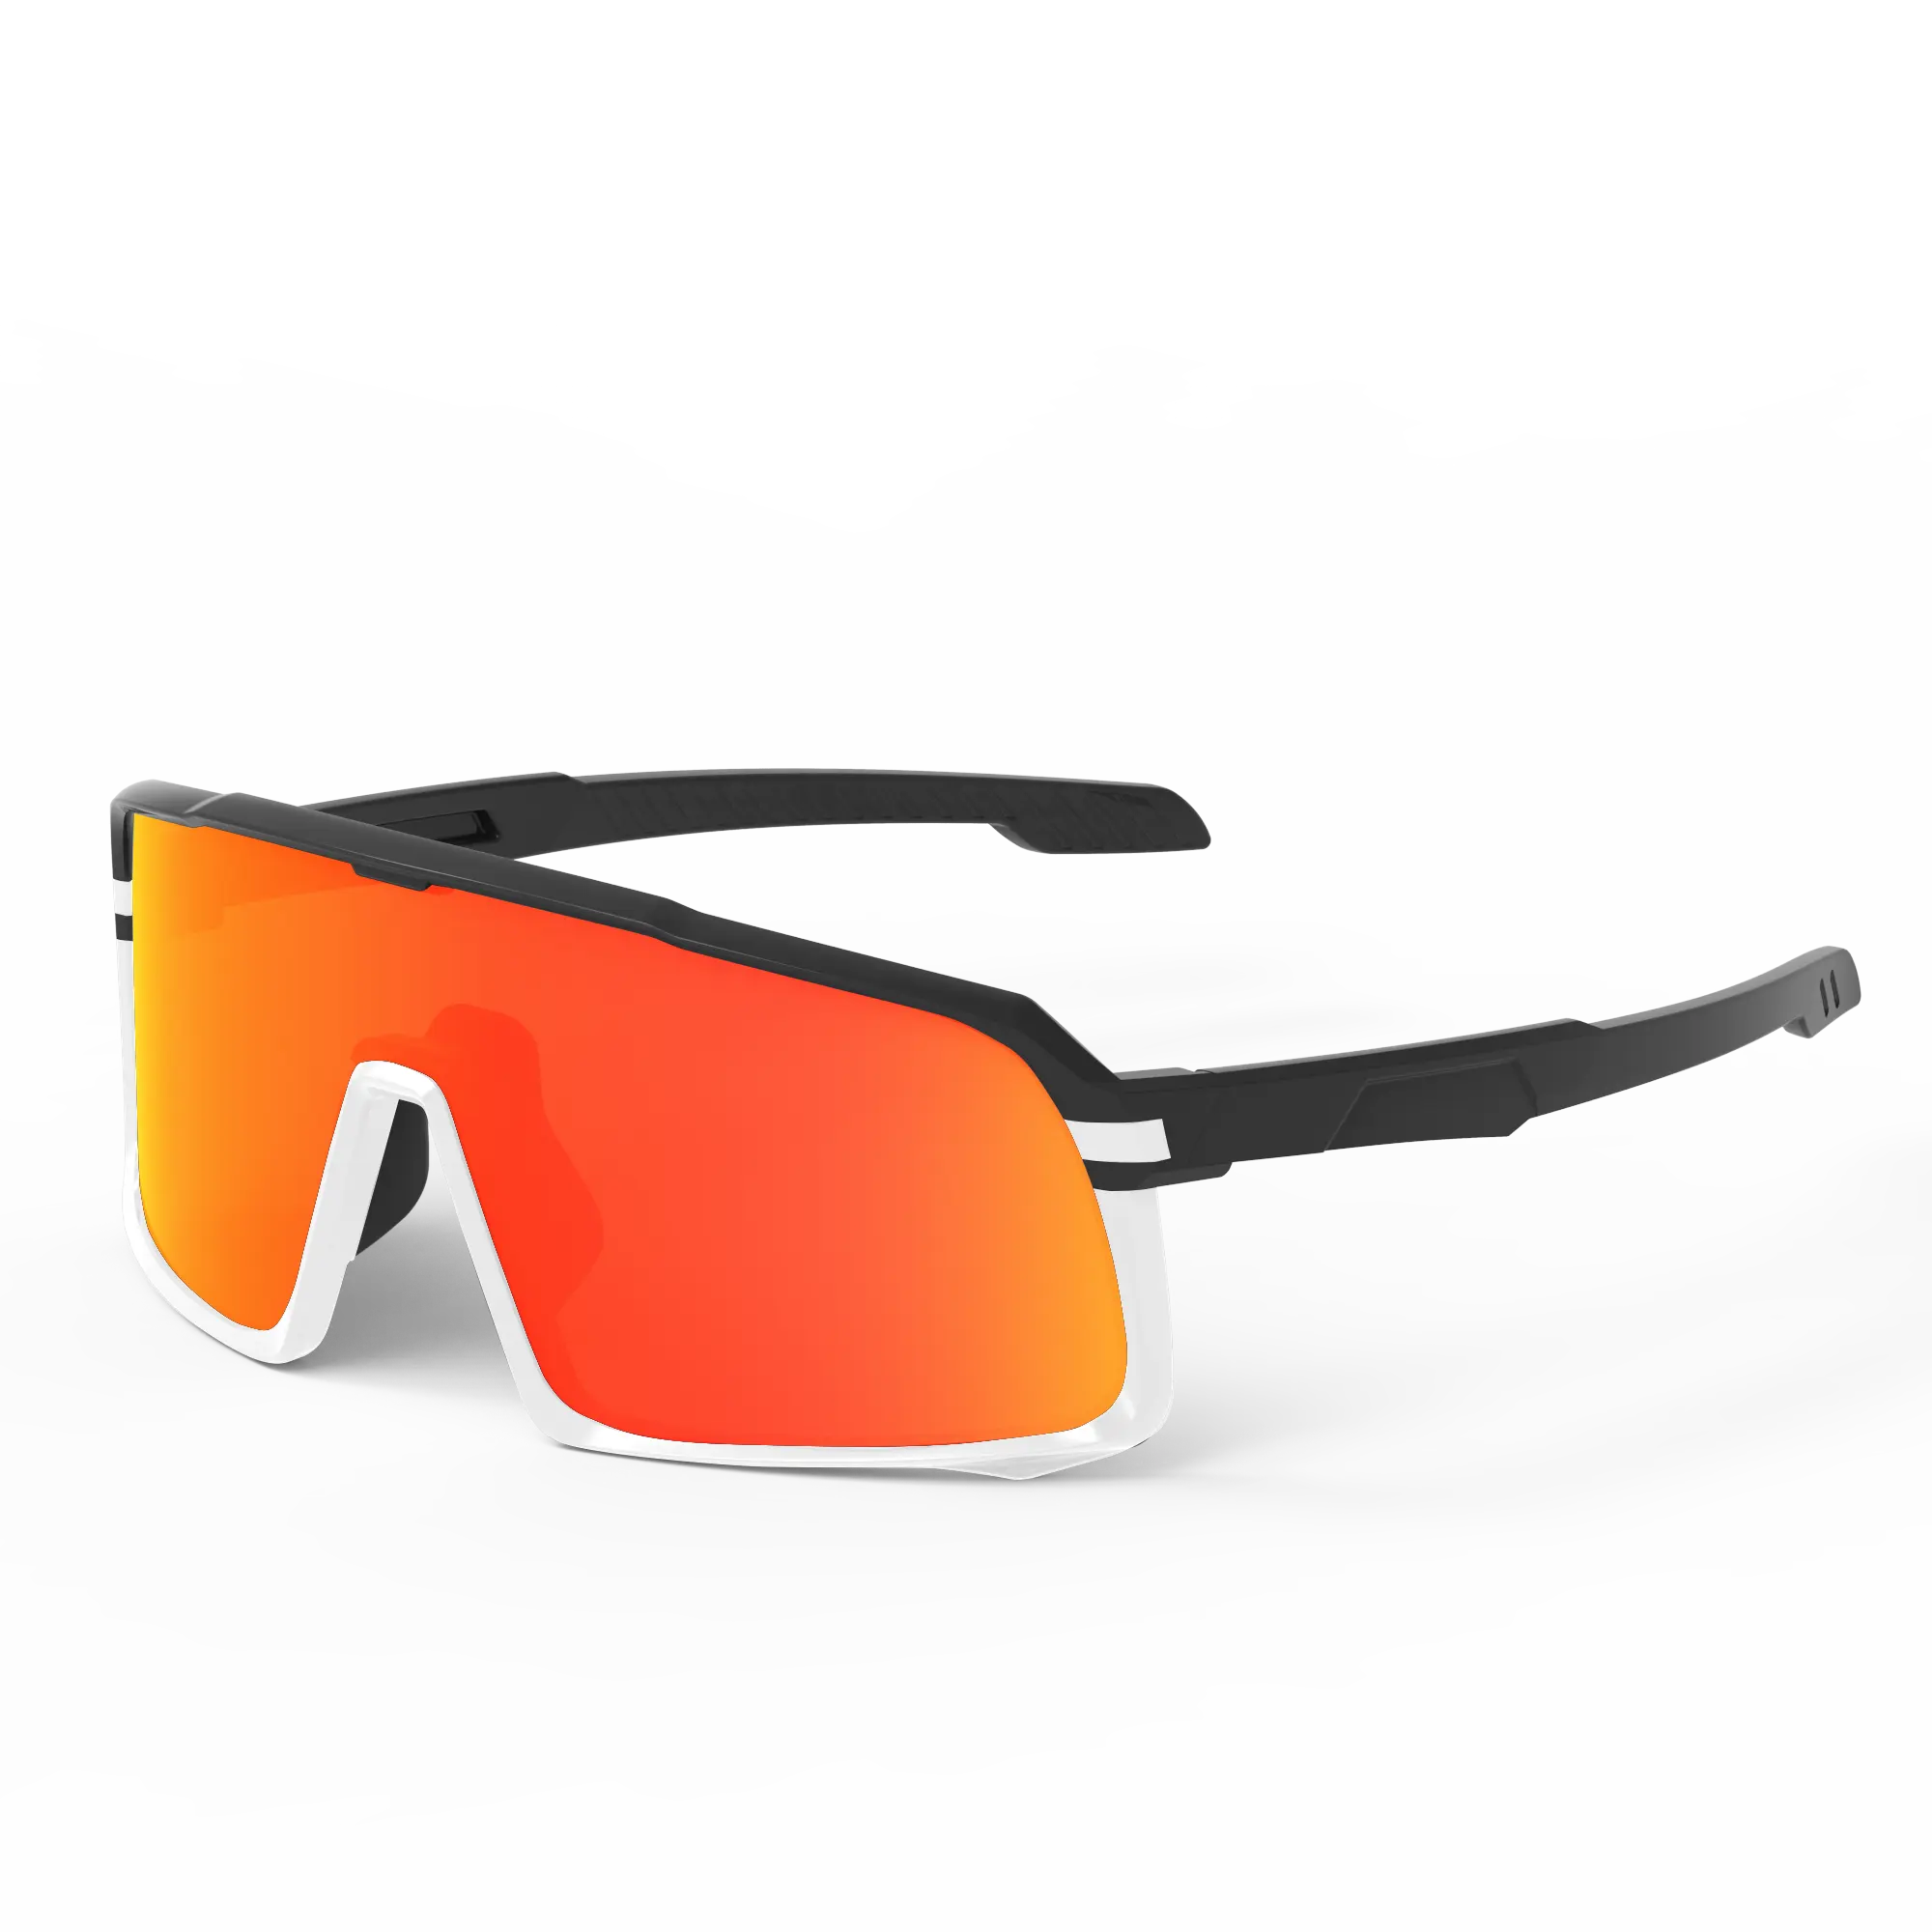 SUNOK Поляризованные спортивные солнцезащитные очки с защитой от УФ-лучей Сменные линзы для велосипеда